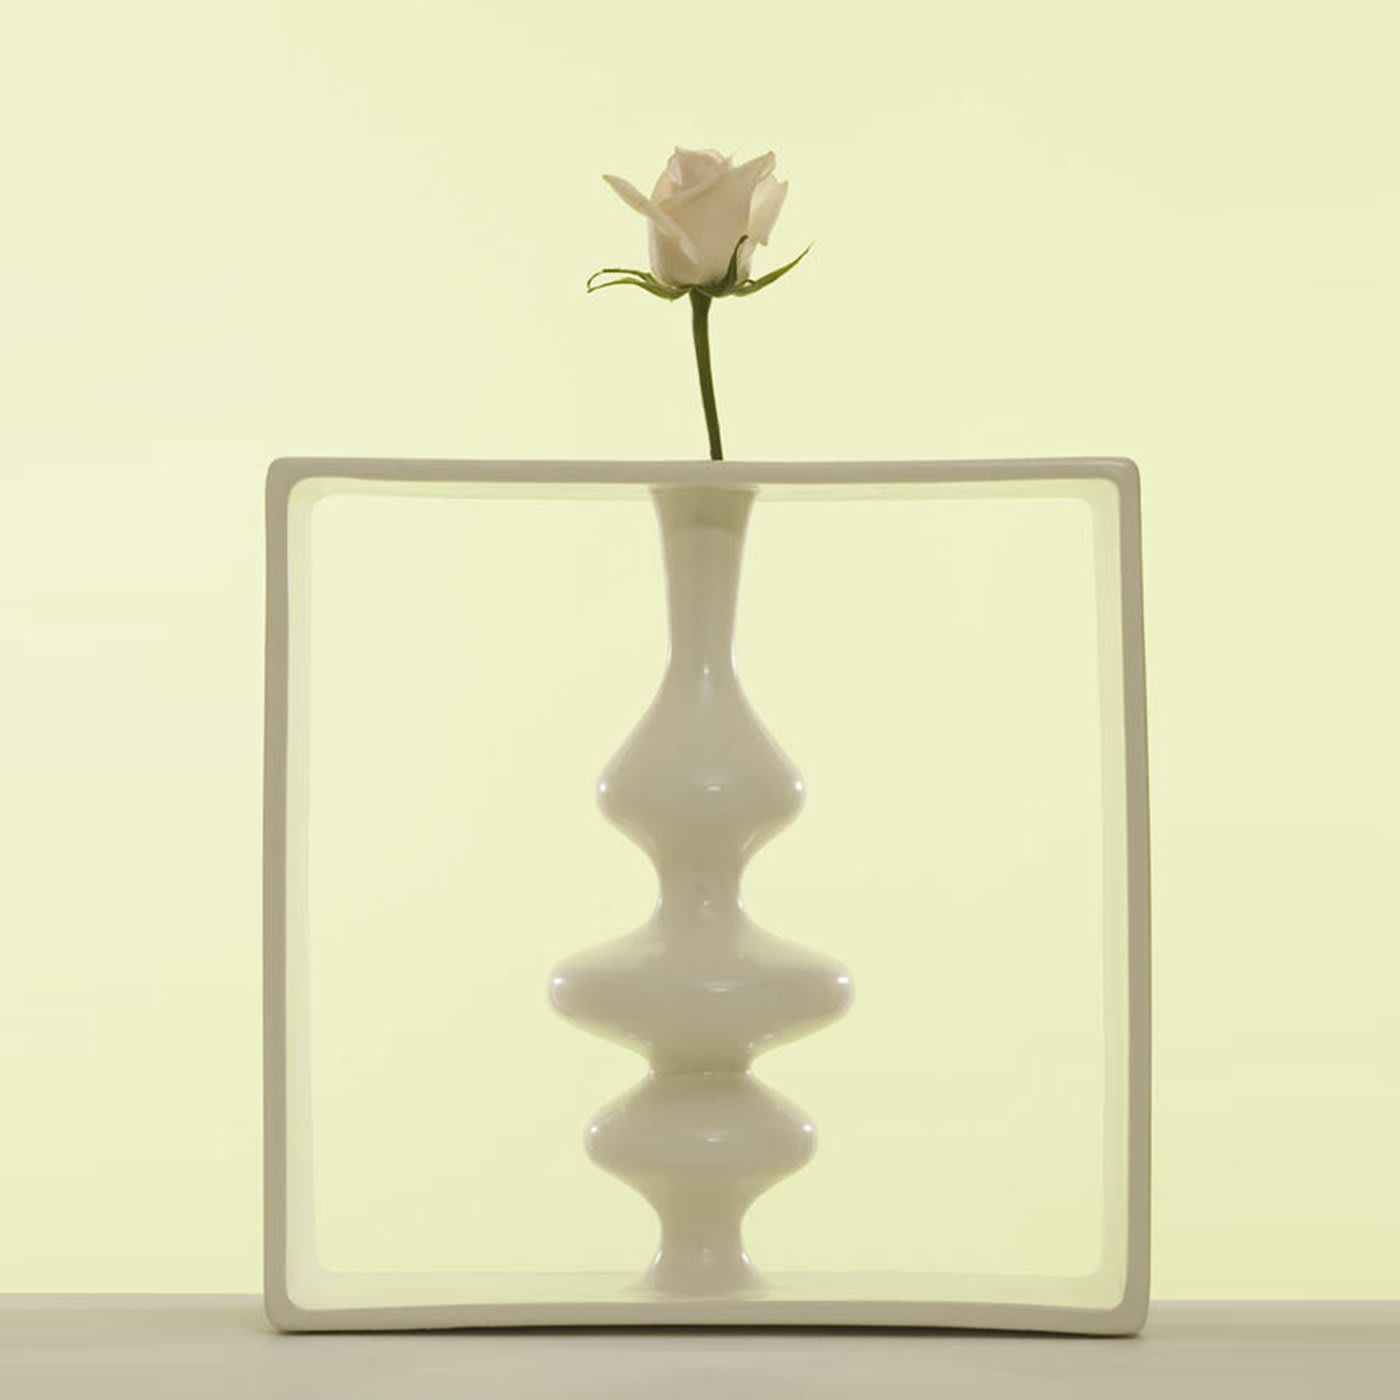 Portali 6 Vase by Andrea Branzi - Superego Design